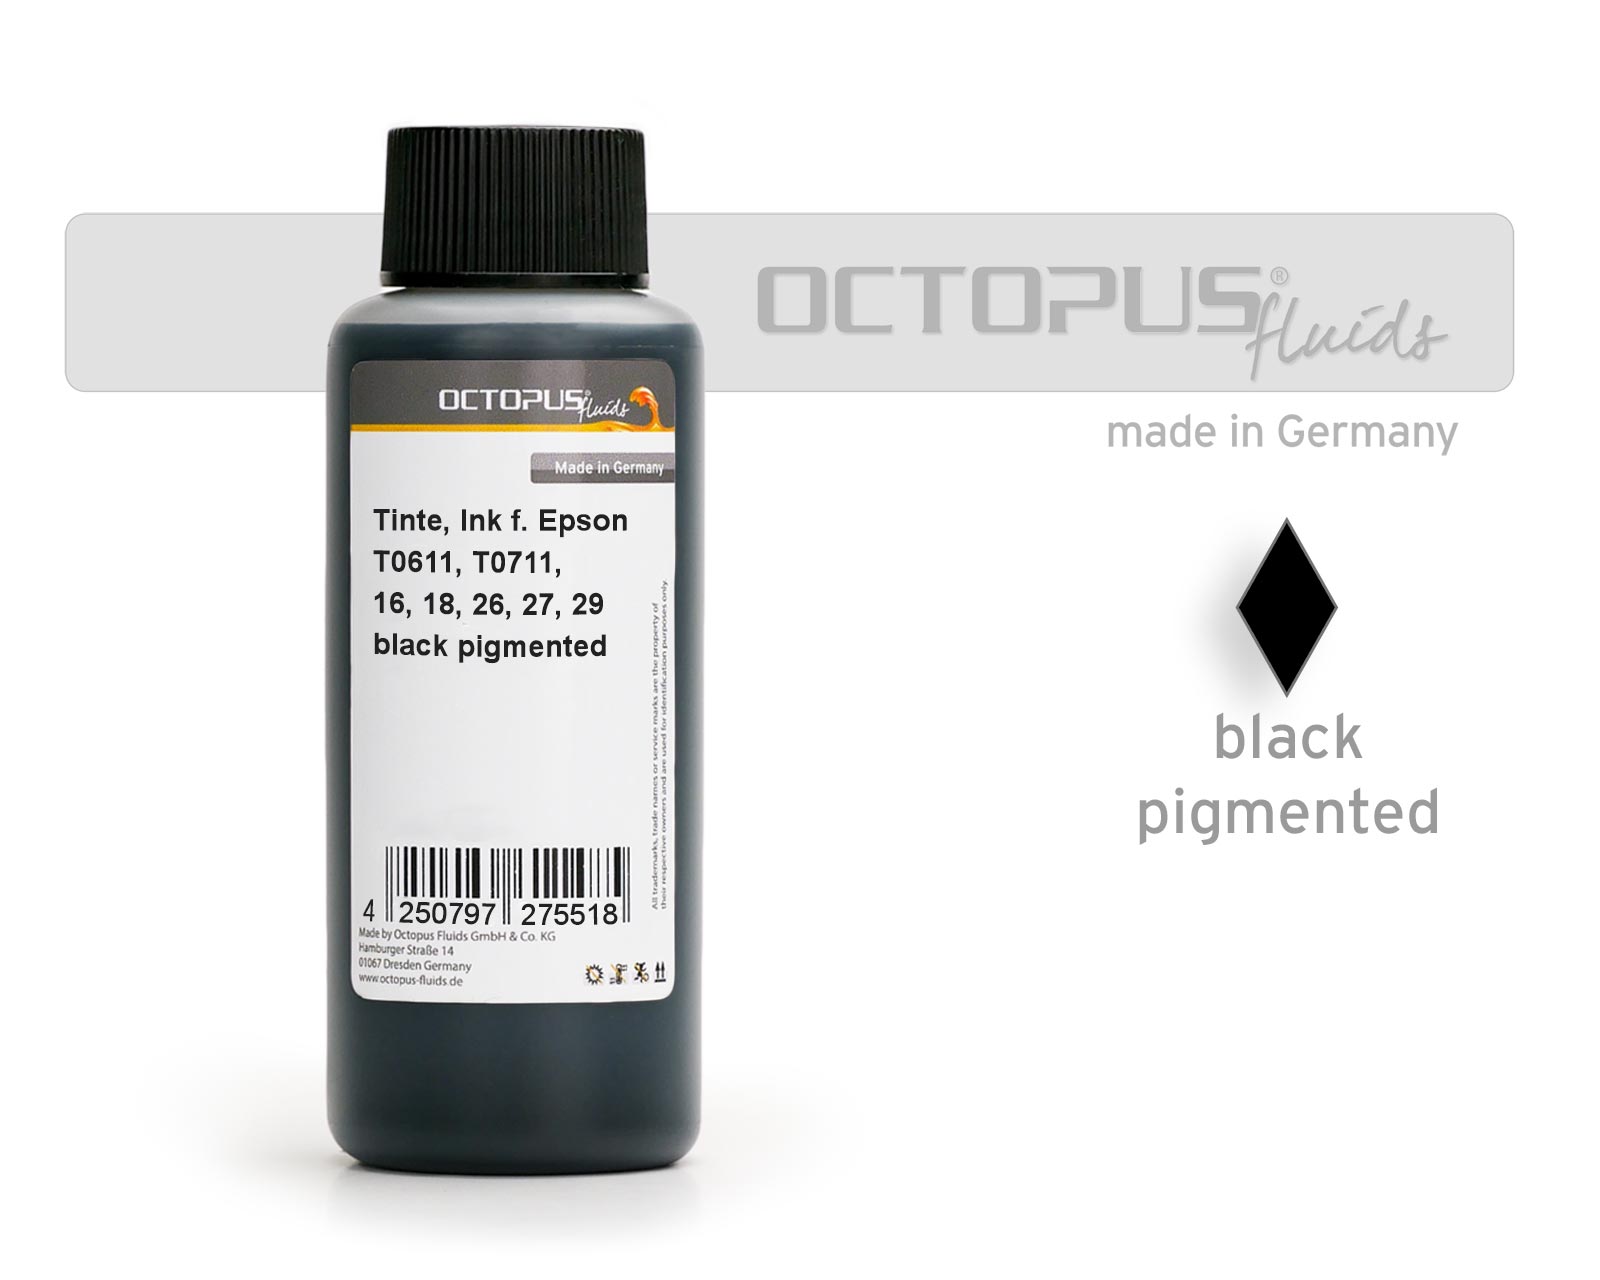 Tinte für Epson T0611, T0711, 16, 18, 26, 27, 29 schwarz pigmentiert